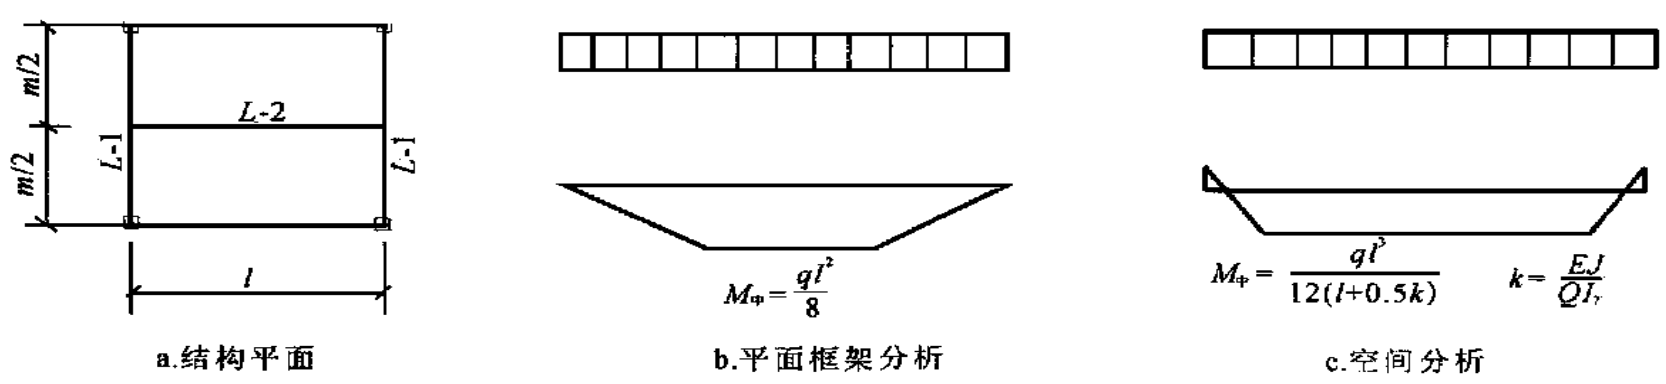 圖5 結構平面及框架邊梁分析結果